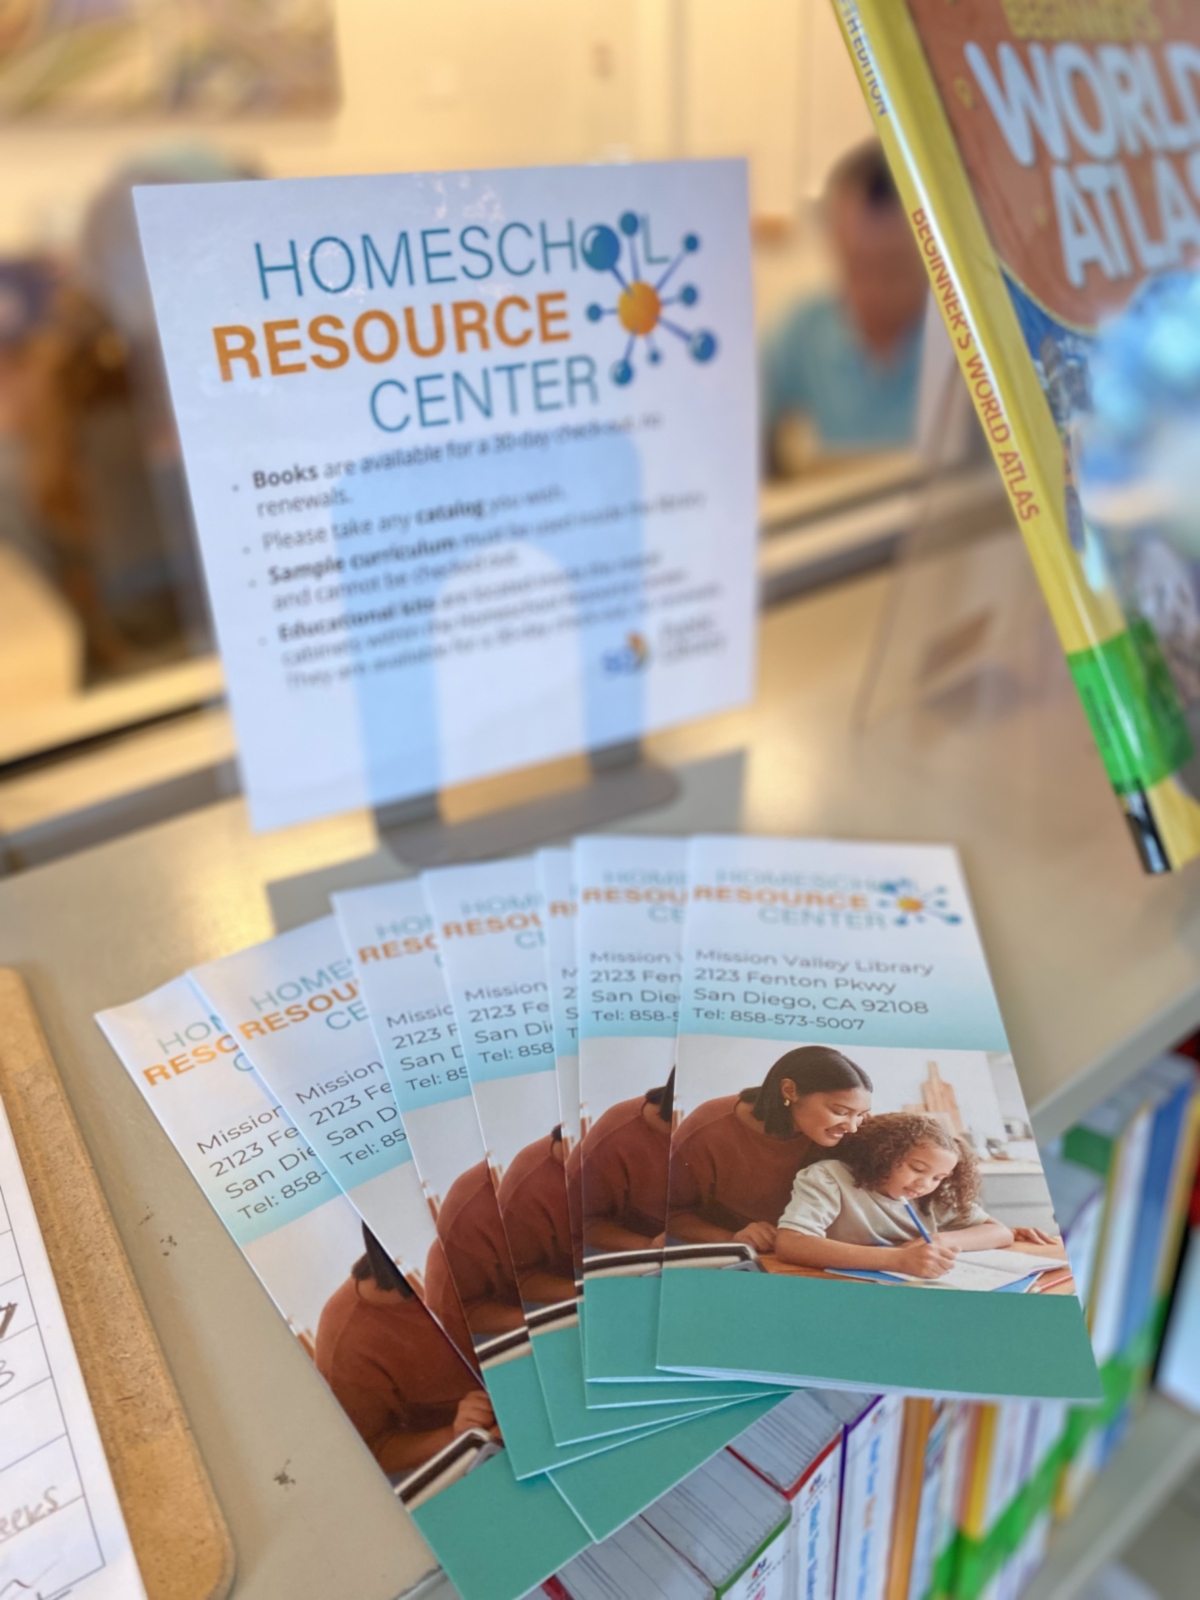 Homeschool Resource Center brochures